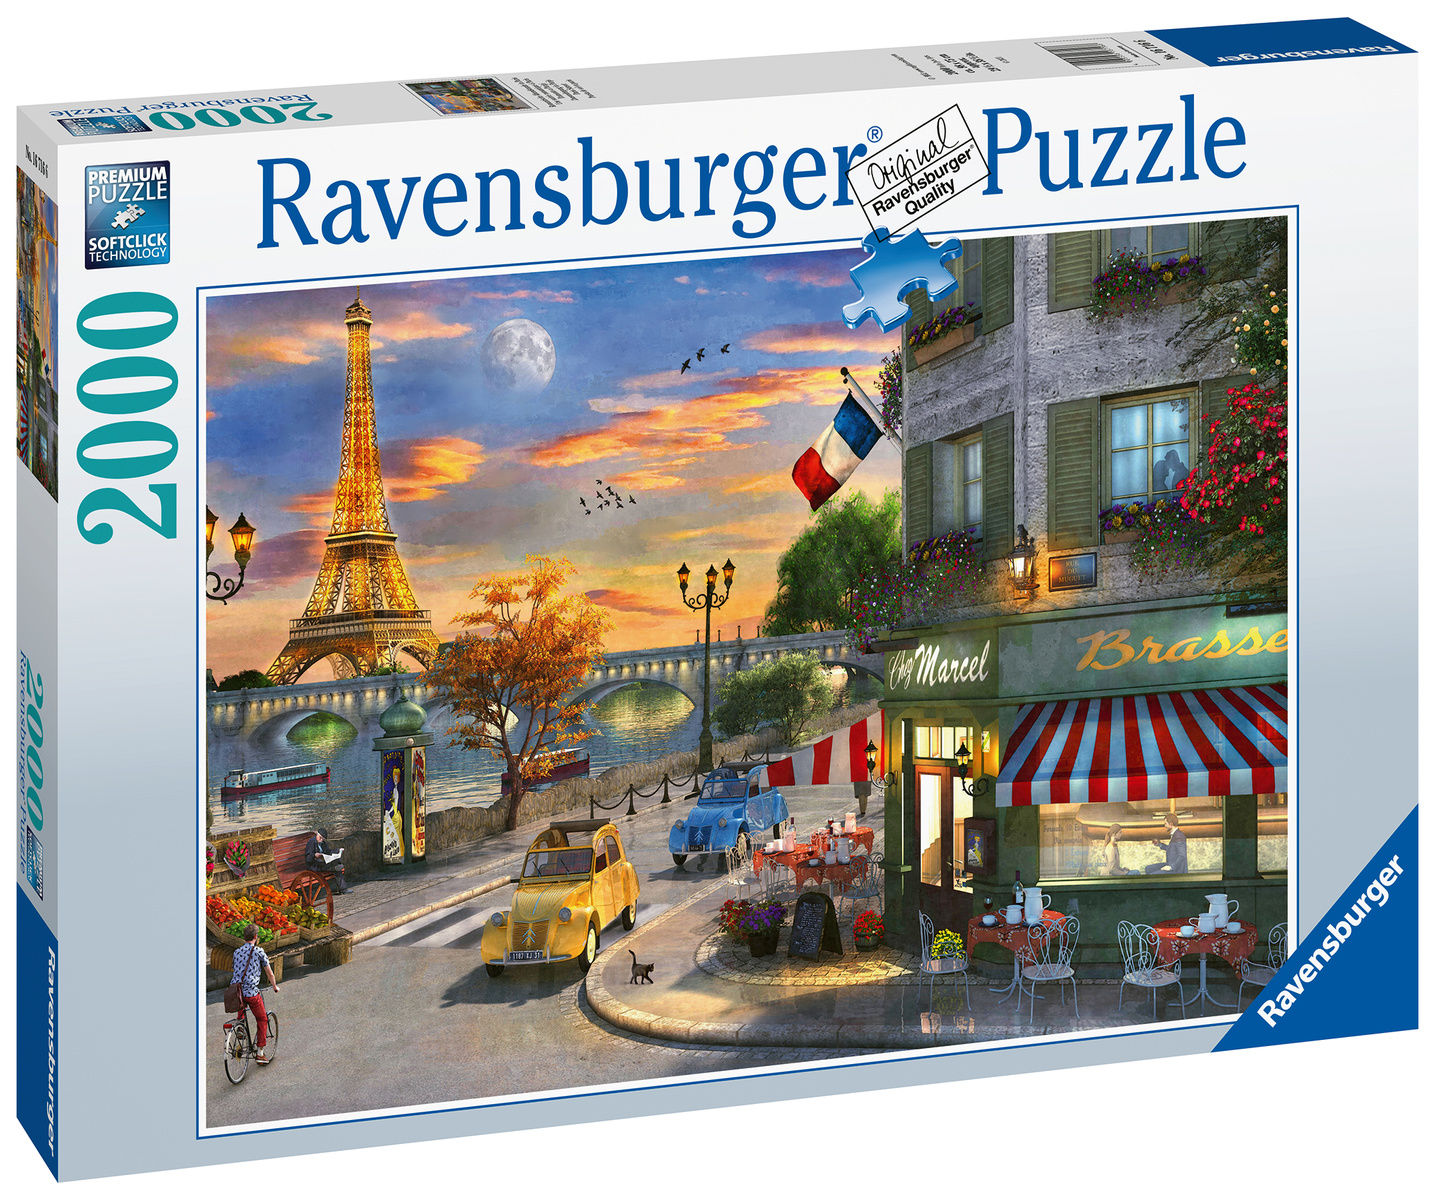 30€ sur Puzzle 2000 pièces porte pour enfants et adultes